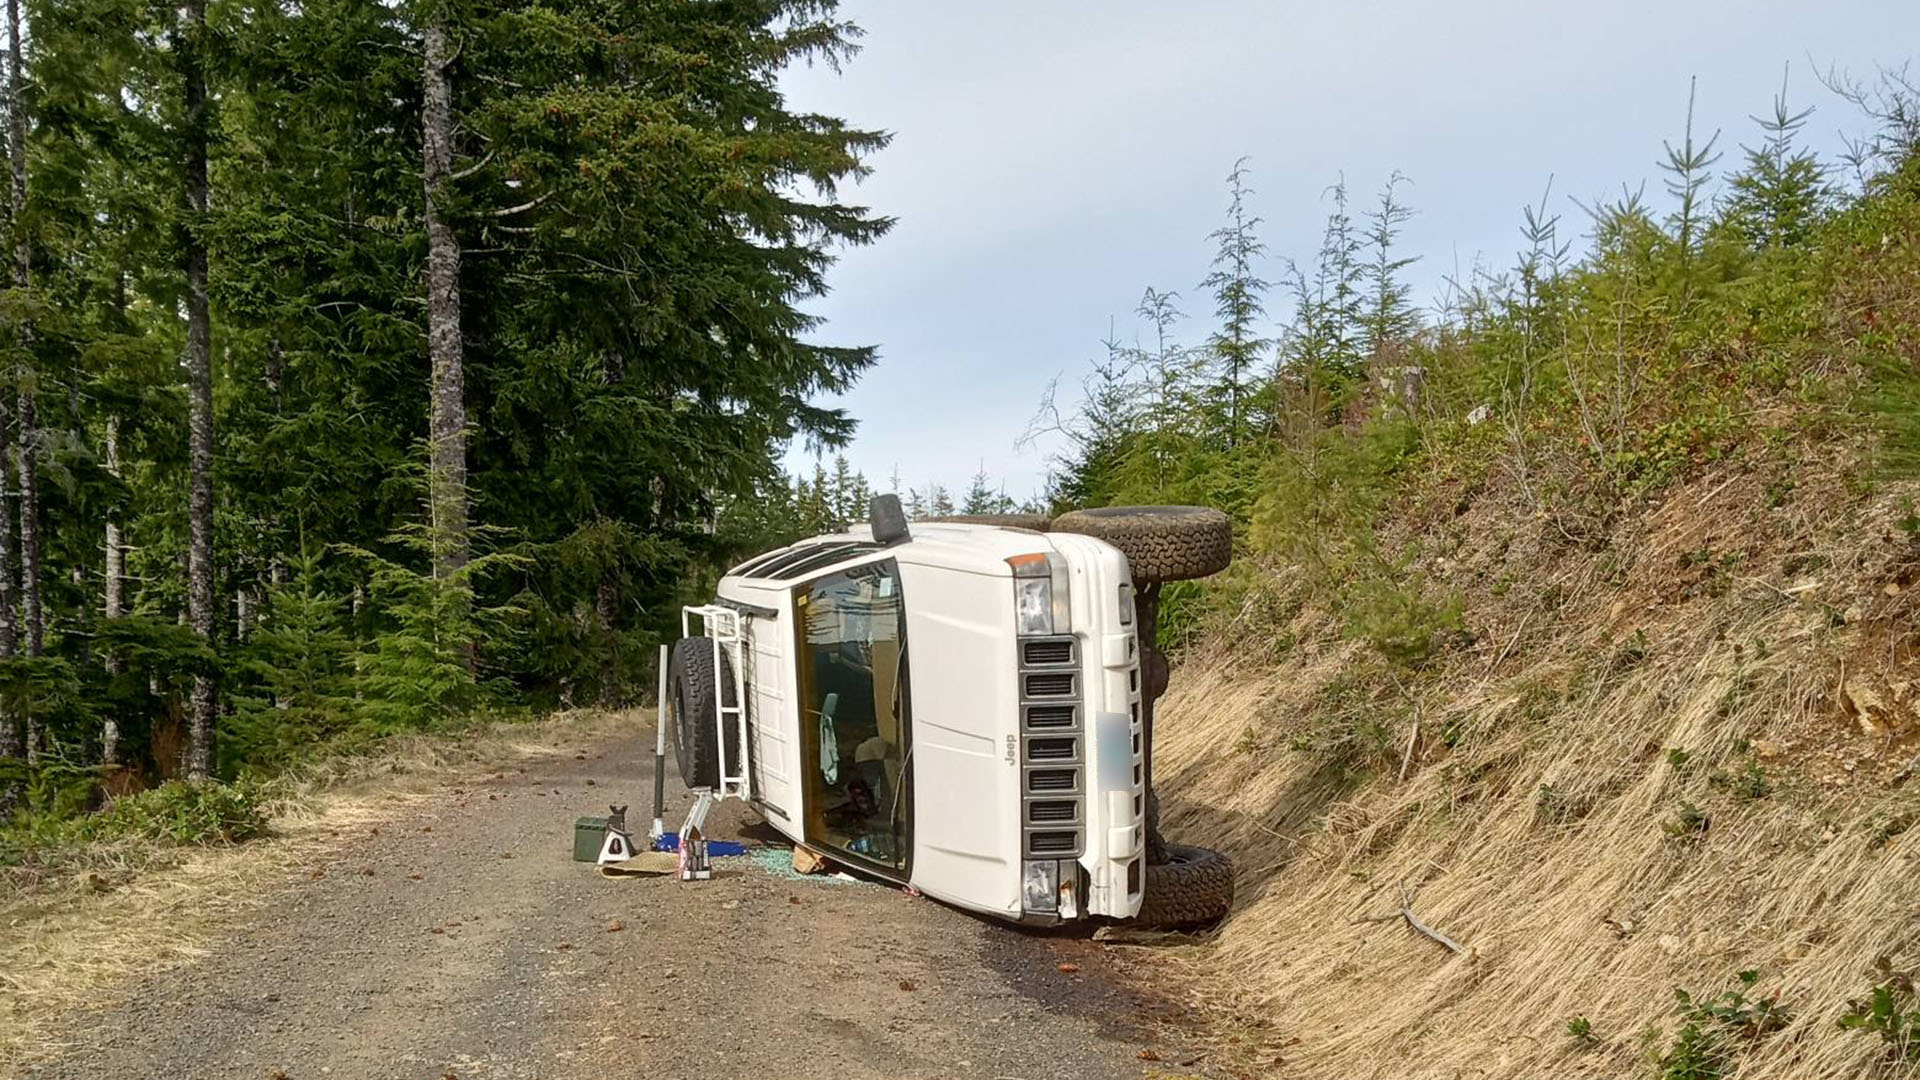 Flipped sideways in Oregon